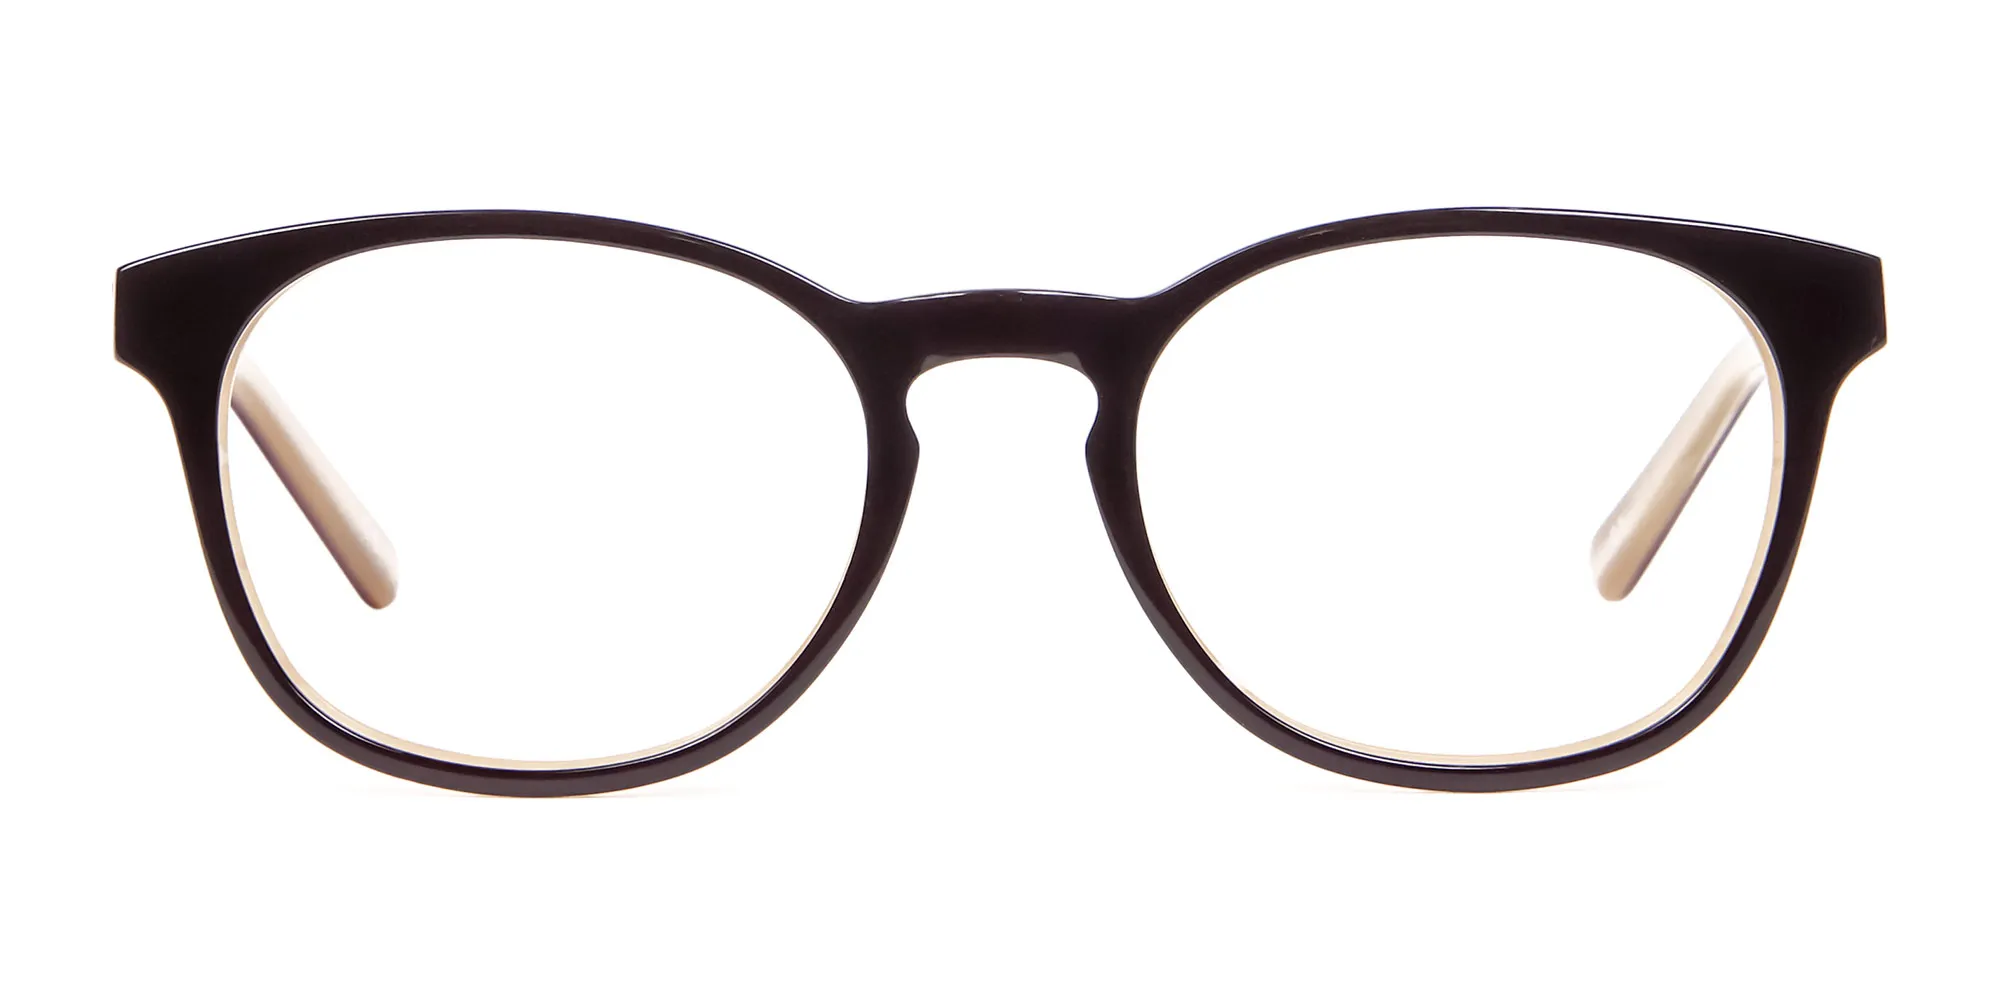 Black & Beige Reading Glasses -1